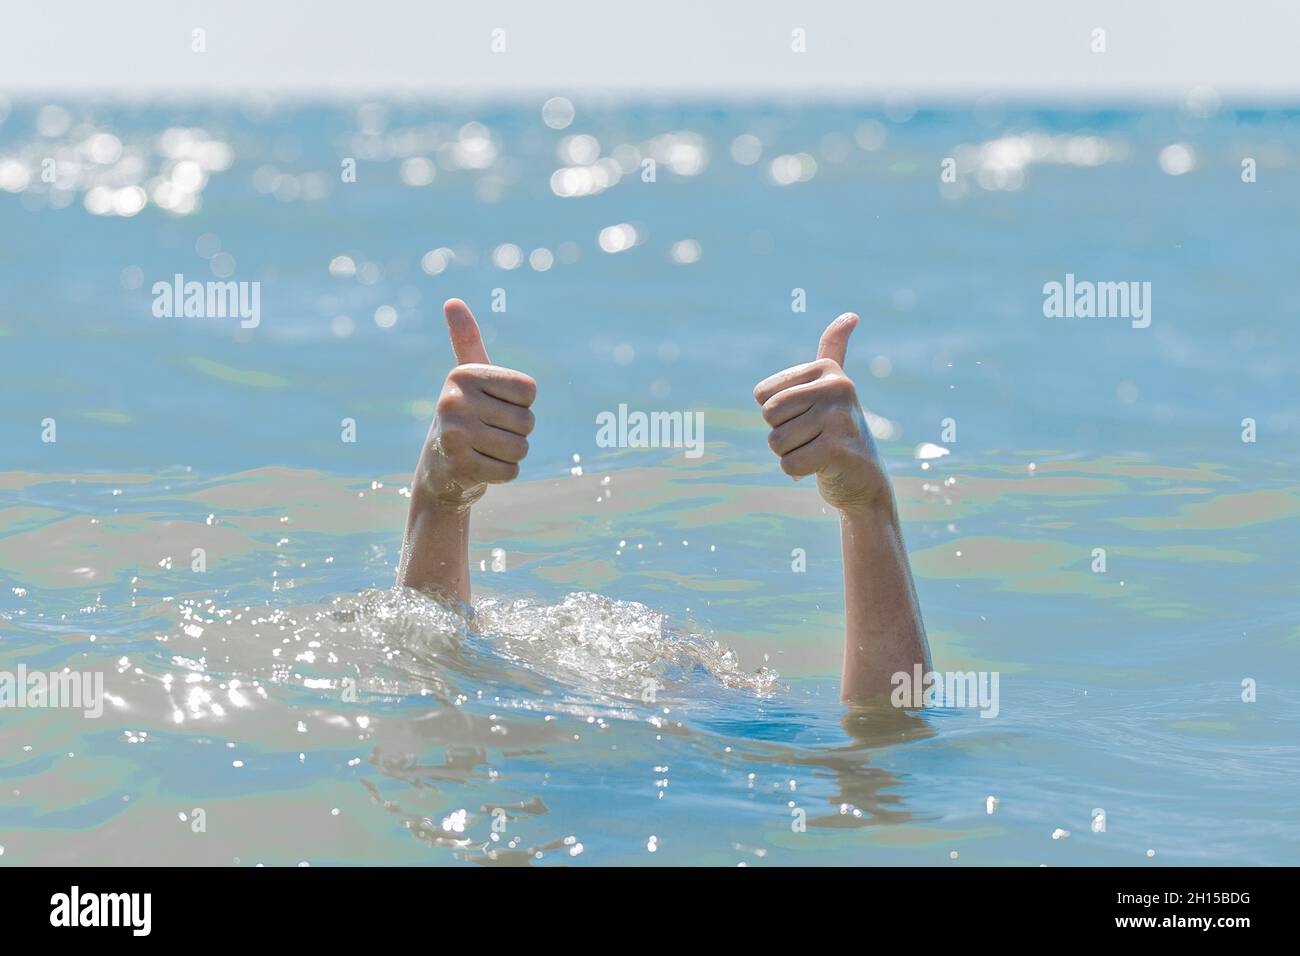 Бутылка наполненная водой тонет в воде. Фото большие пальцы вверх из под воды. Показывает палец вверх под водой. Утопленная в воде клавиатура.